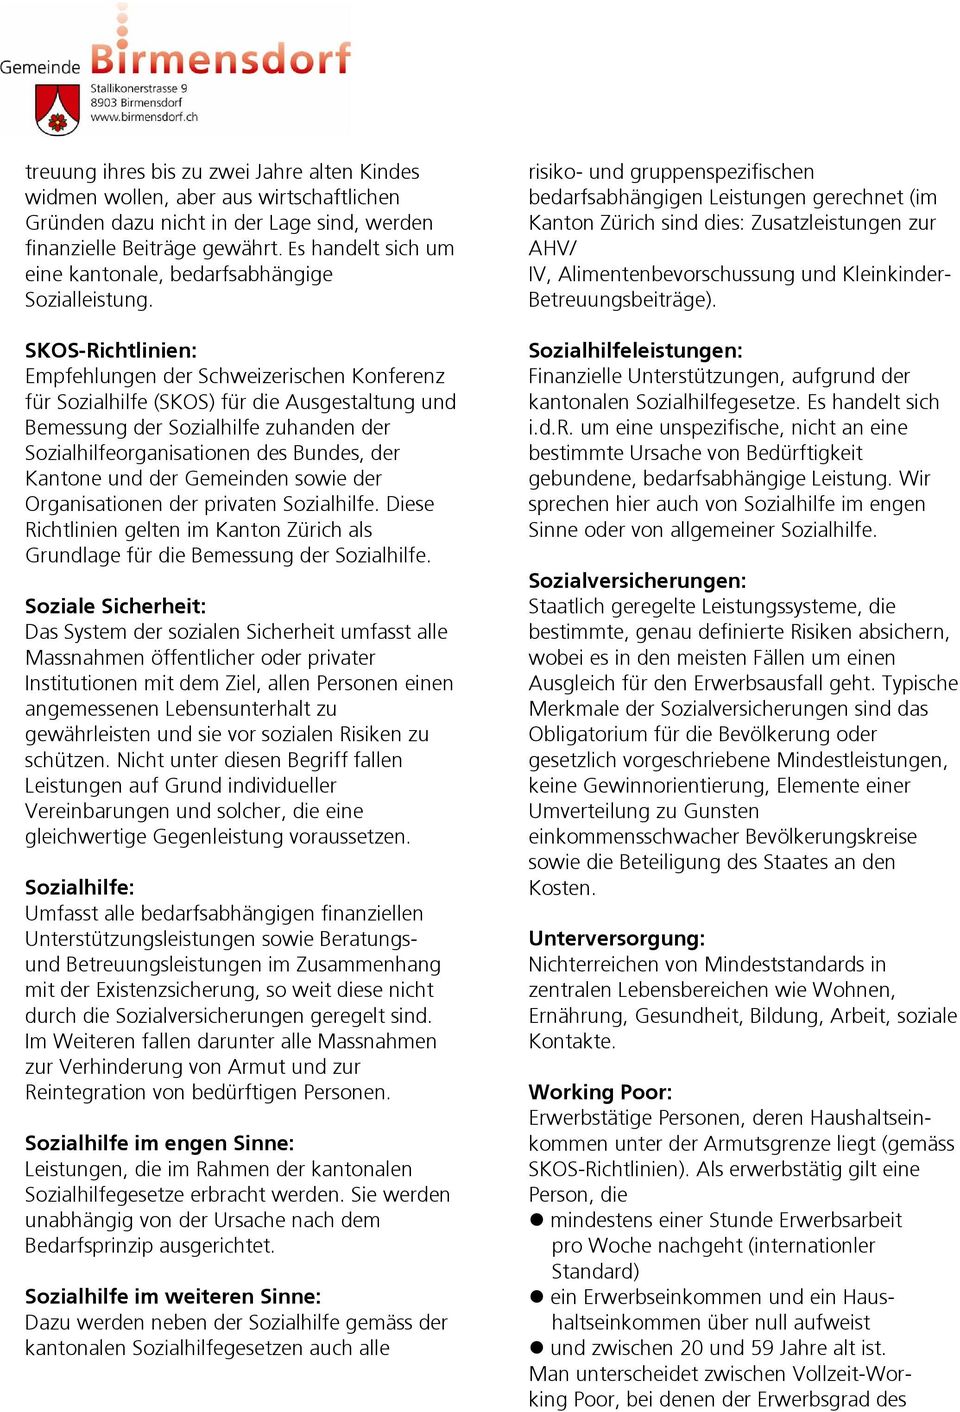 SKOS-Richtlinien: Empfehlungen der Schweizerischen Konferenz für Sozialhilfe (SKOS) für die Ausgestaltung und Bemessung der Sozialhilfe zuhanden der Sozialhilfeorganisationen des Bundes, der Kantone